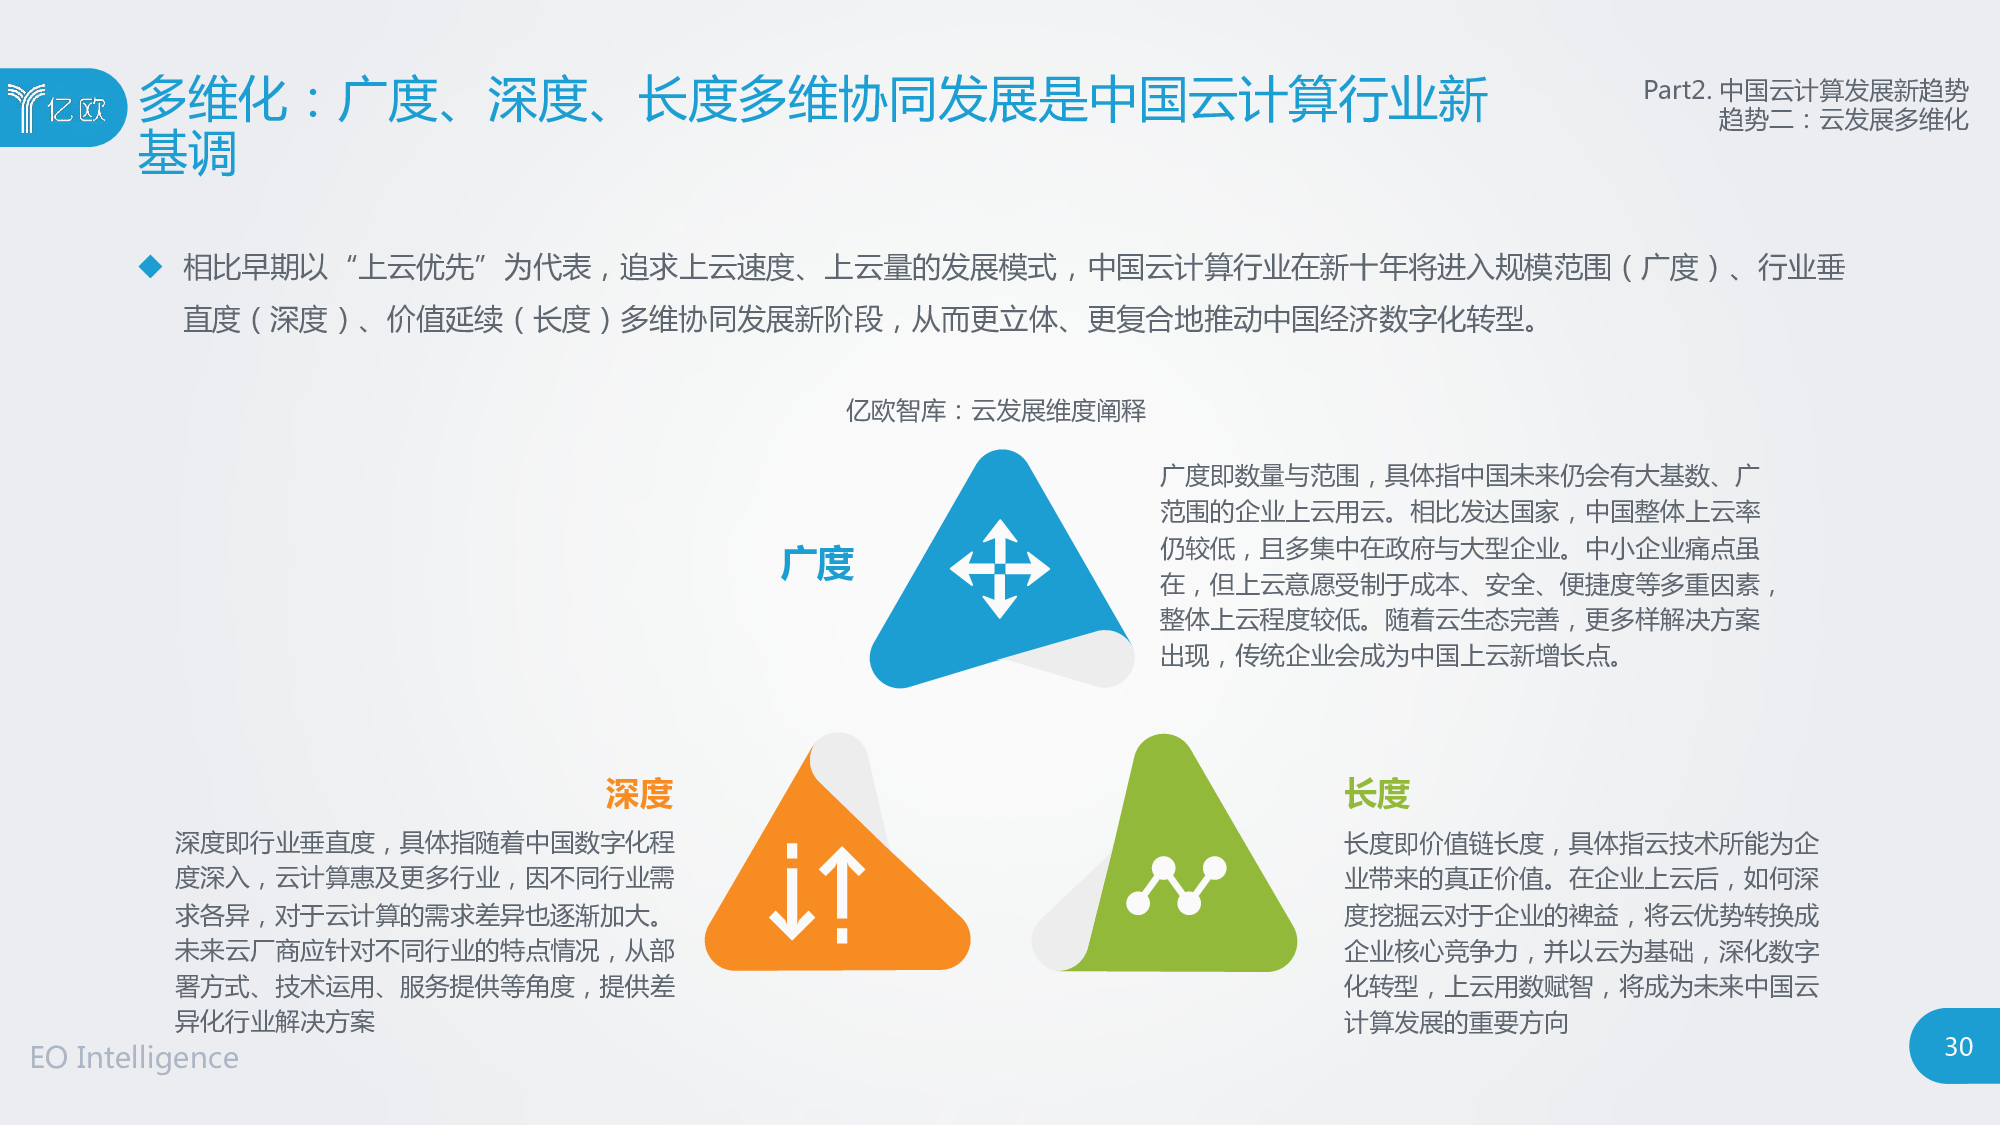 中国云计算行业研究报告 物联网新闻频道 Iot库